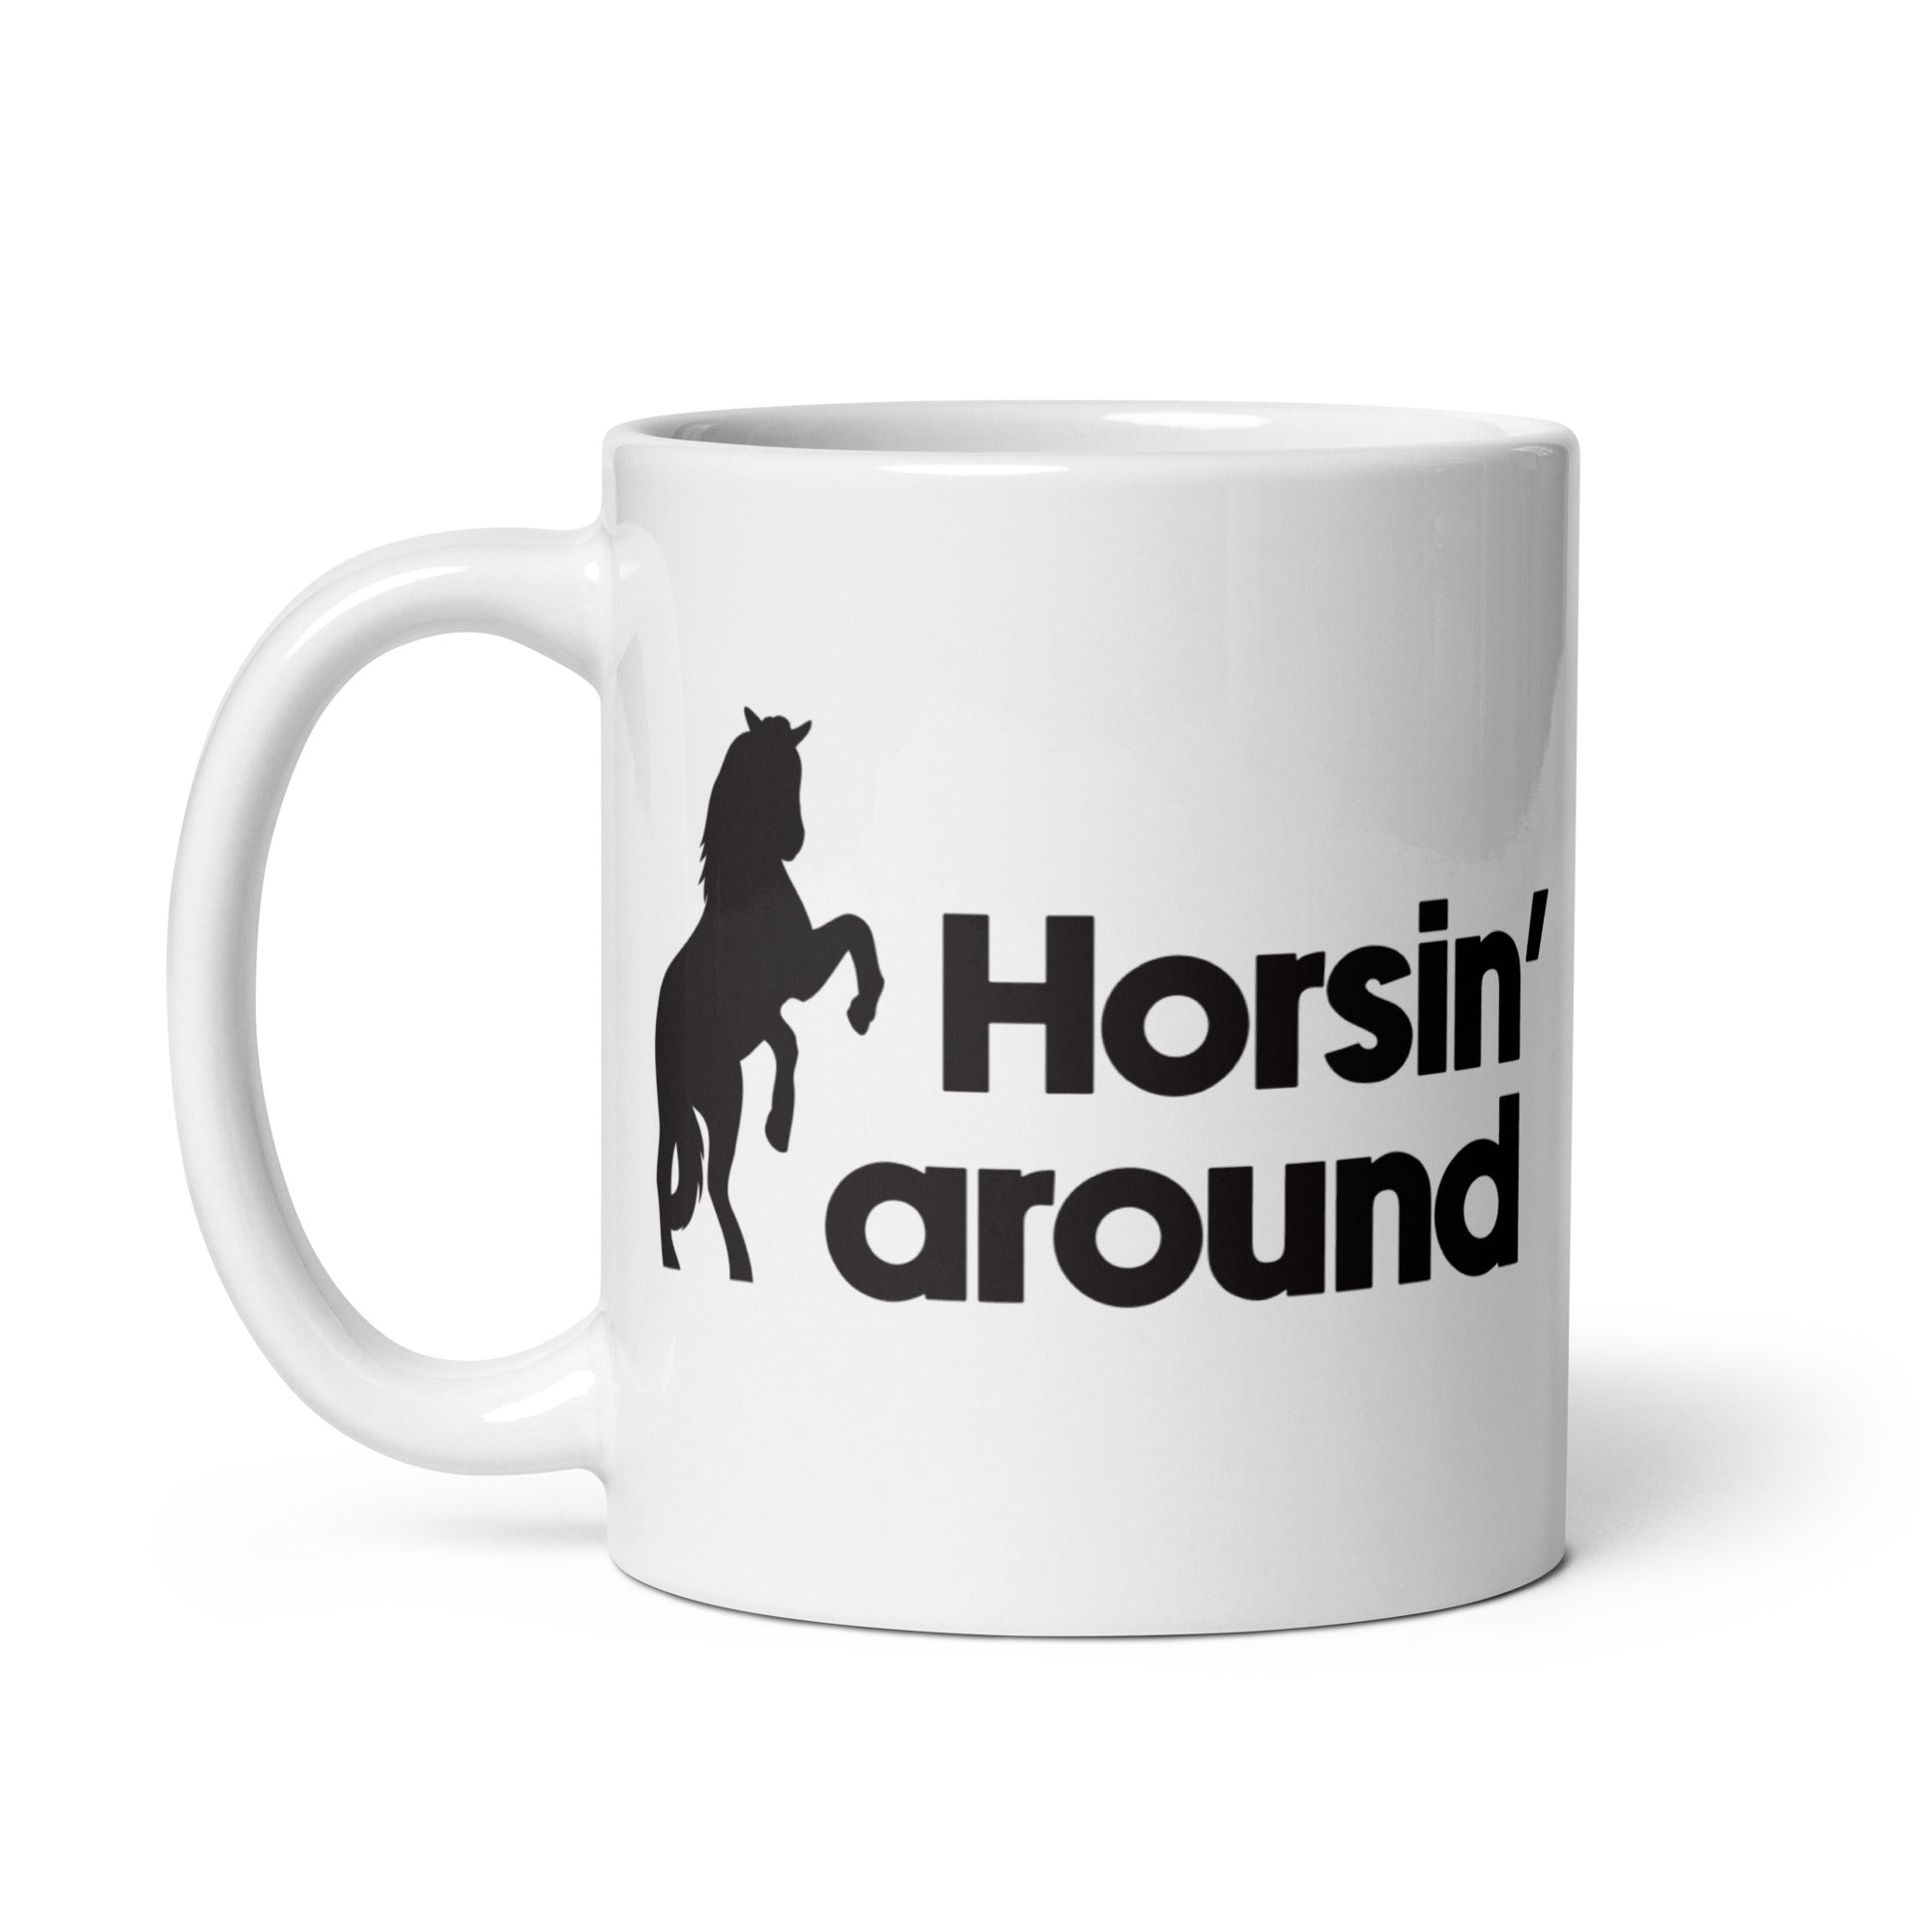 Horsin' around White Mug FEI Official Store